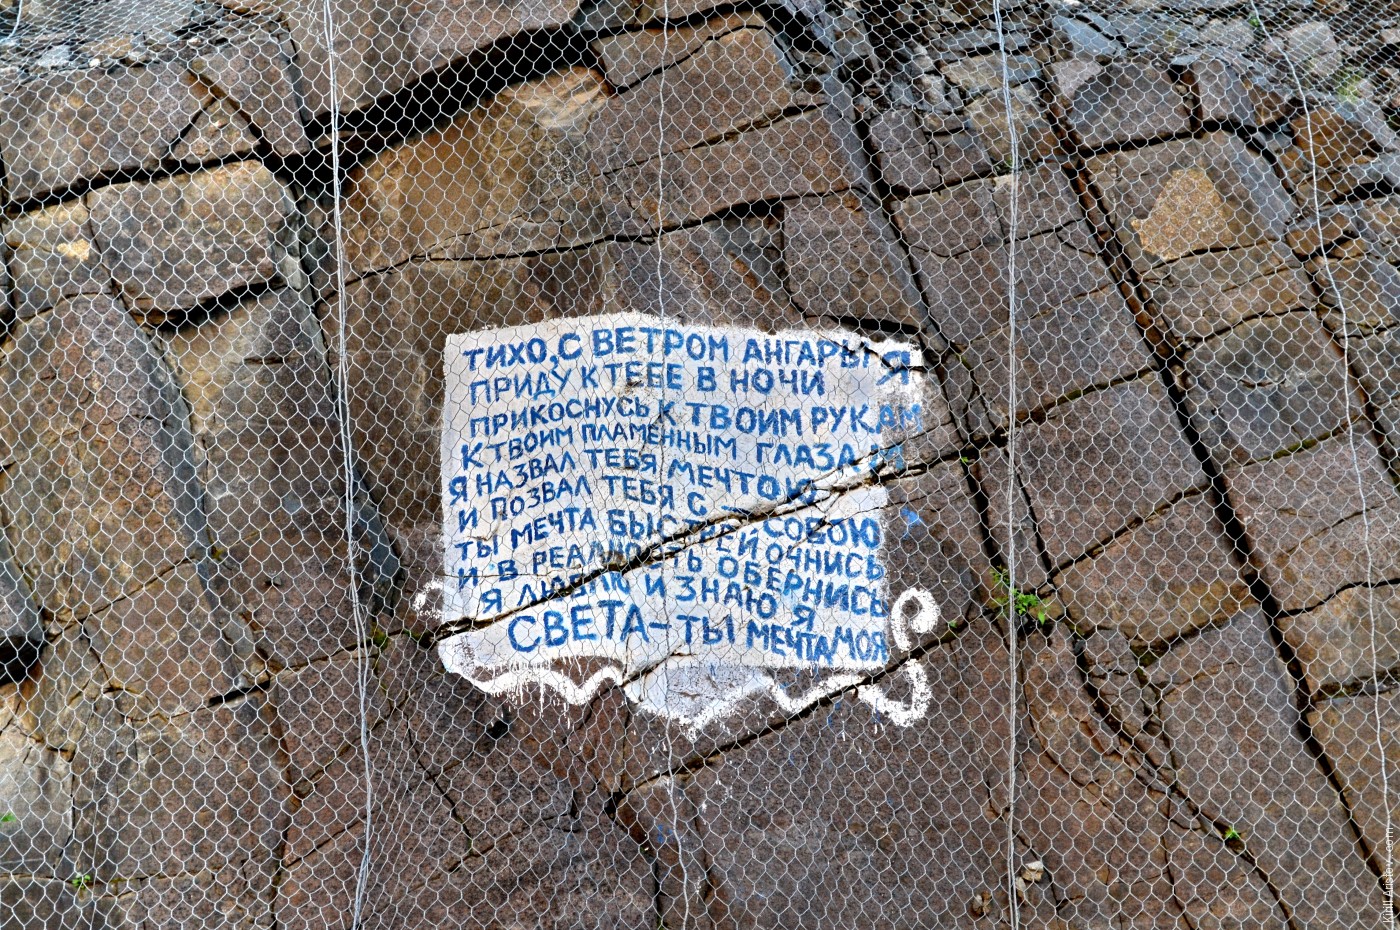 Надпись на скале рядом с плотиной Богучанской ГЭС, Место: Плотина Богучанской ГЭС на реке Ангара.